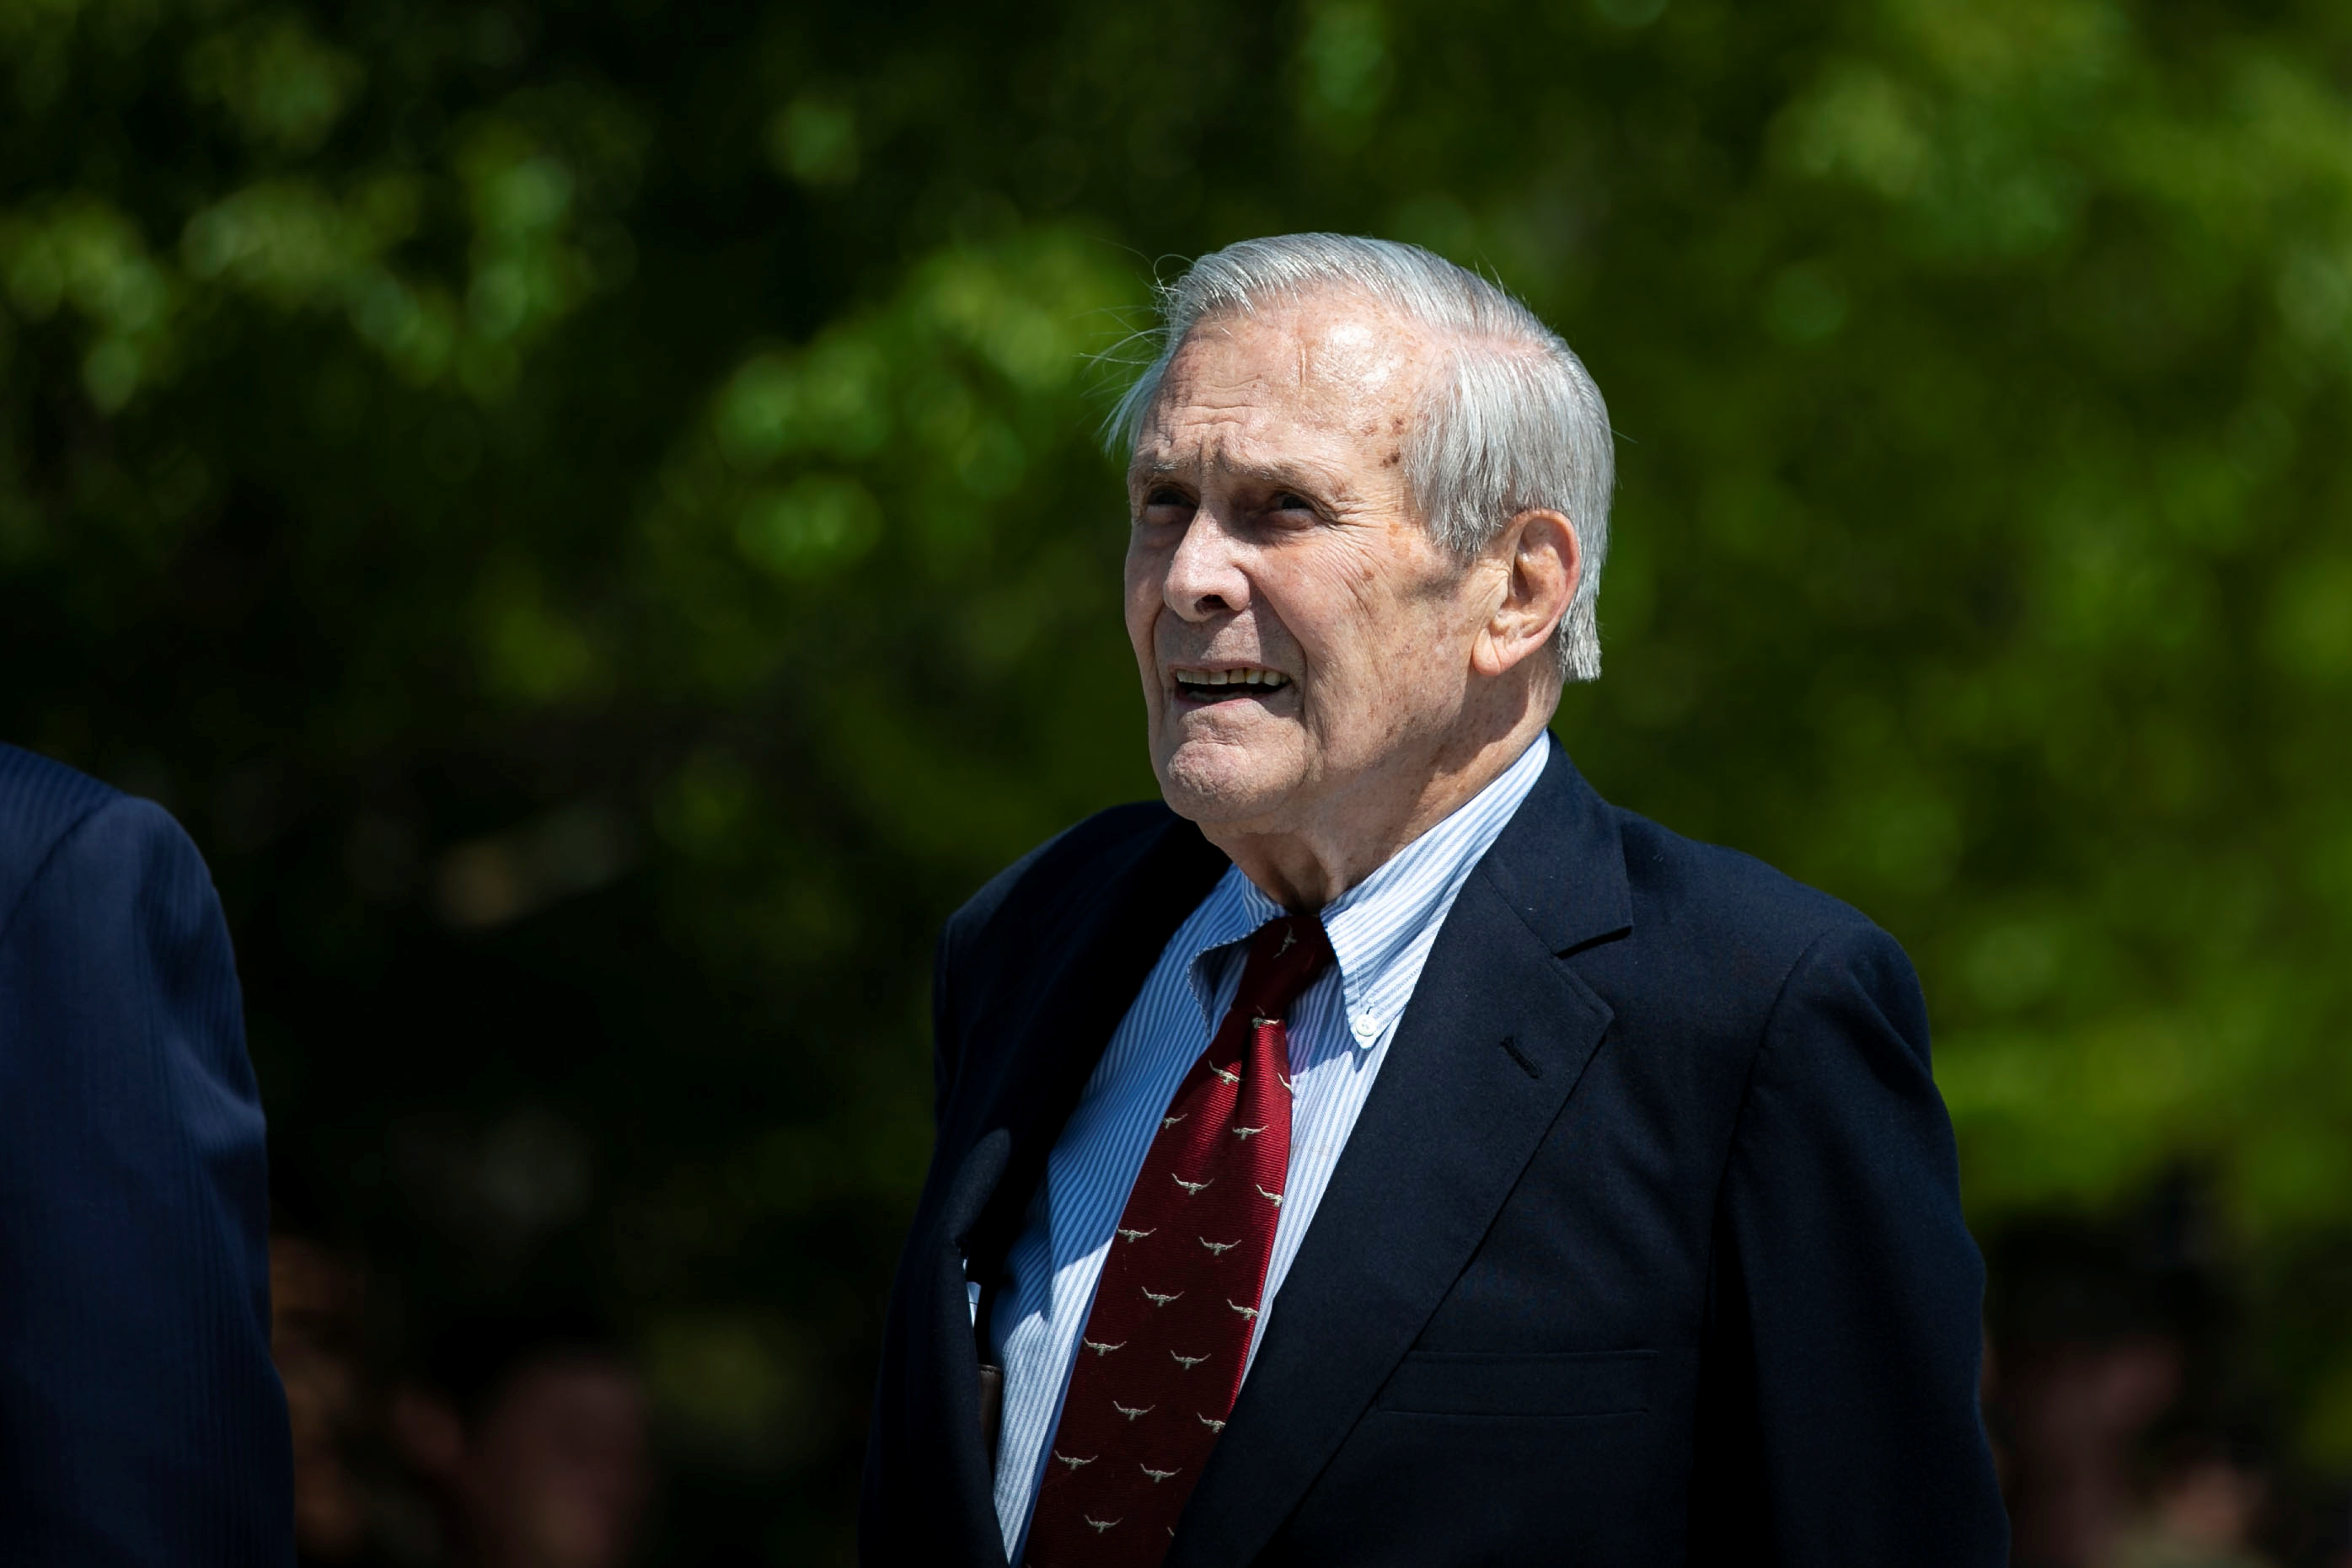 Former U.S. President George W. Bush places a wreath as U.S. Defense Secretary Mark Esper and former U.S. Defense Secretary Donald Rumsfeld look on